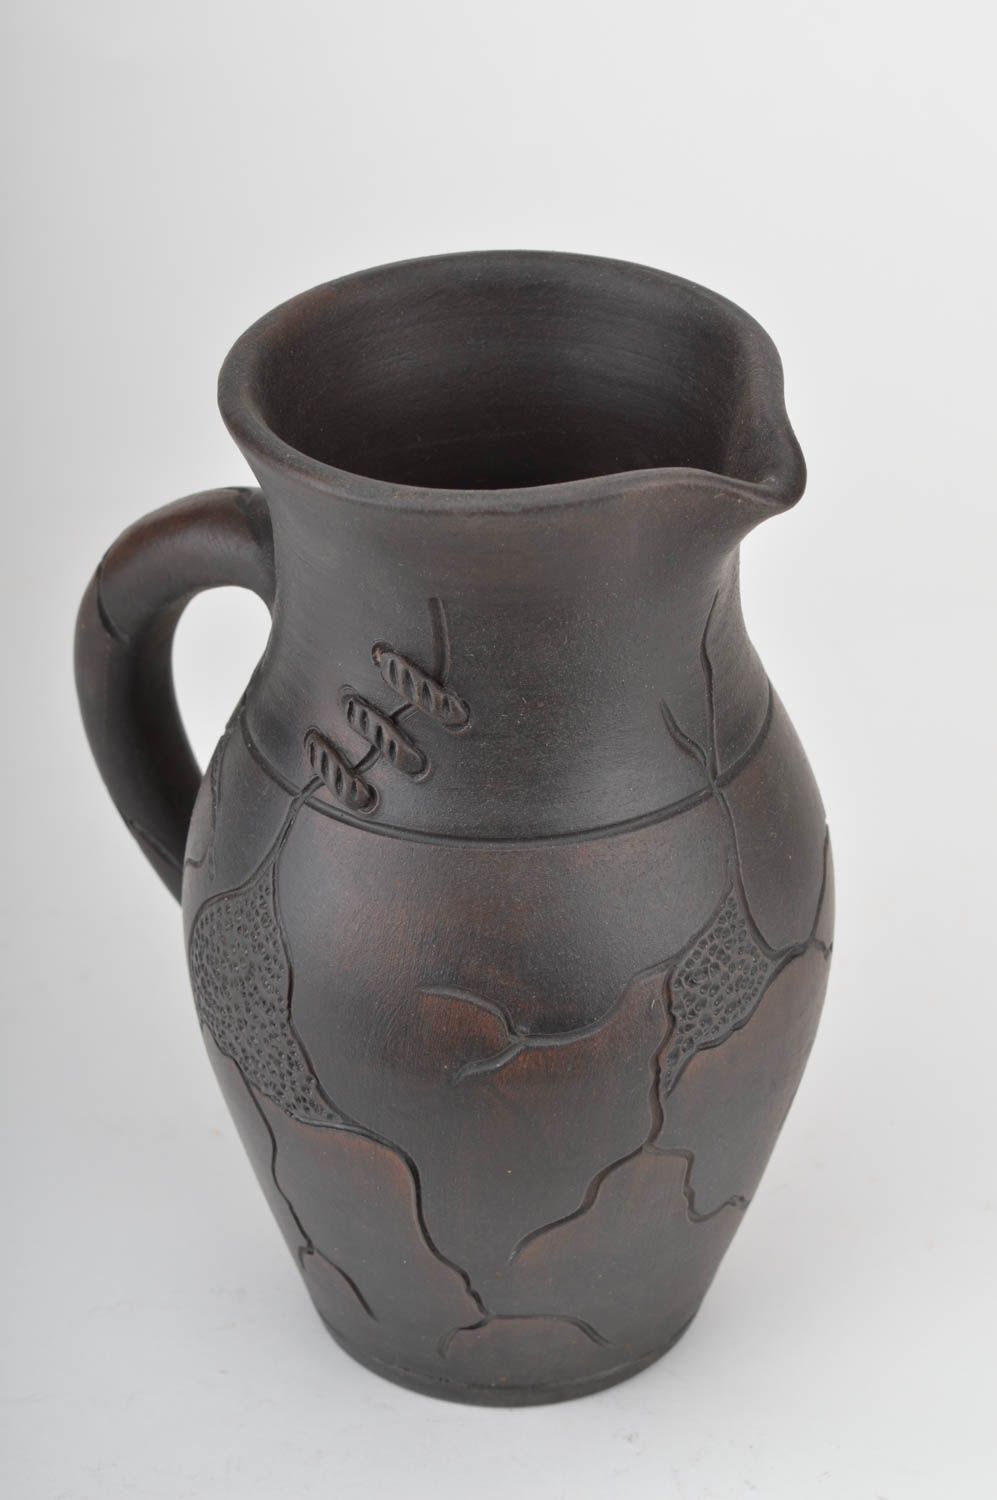 60 oz ceramic water jug with handle in dark brown color 2 lb photo 5